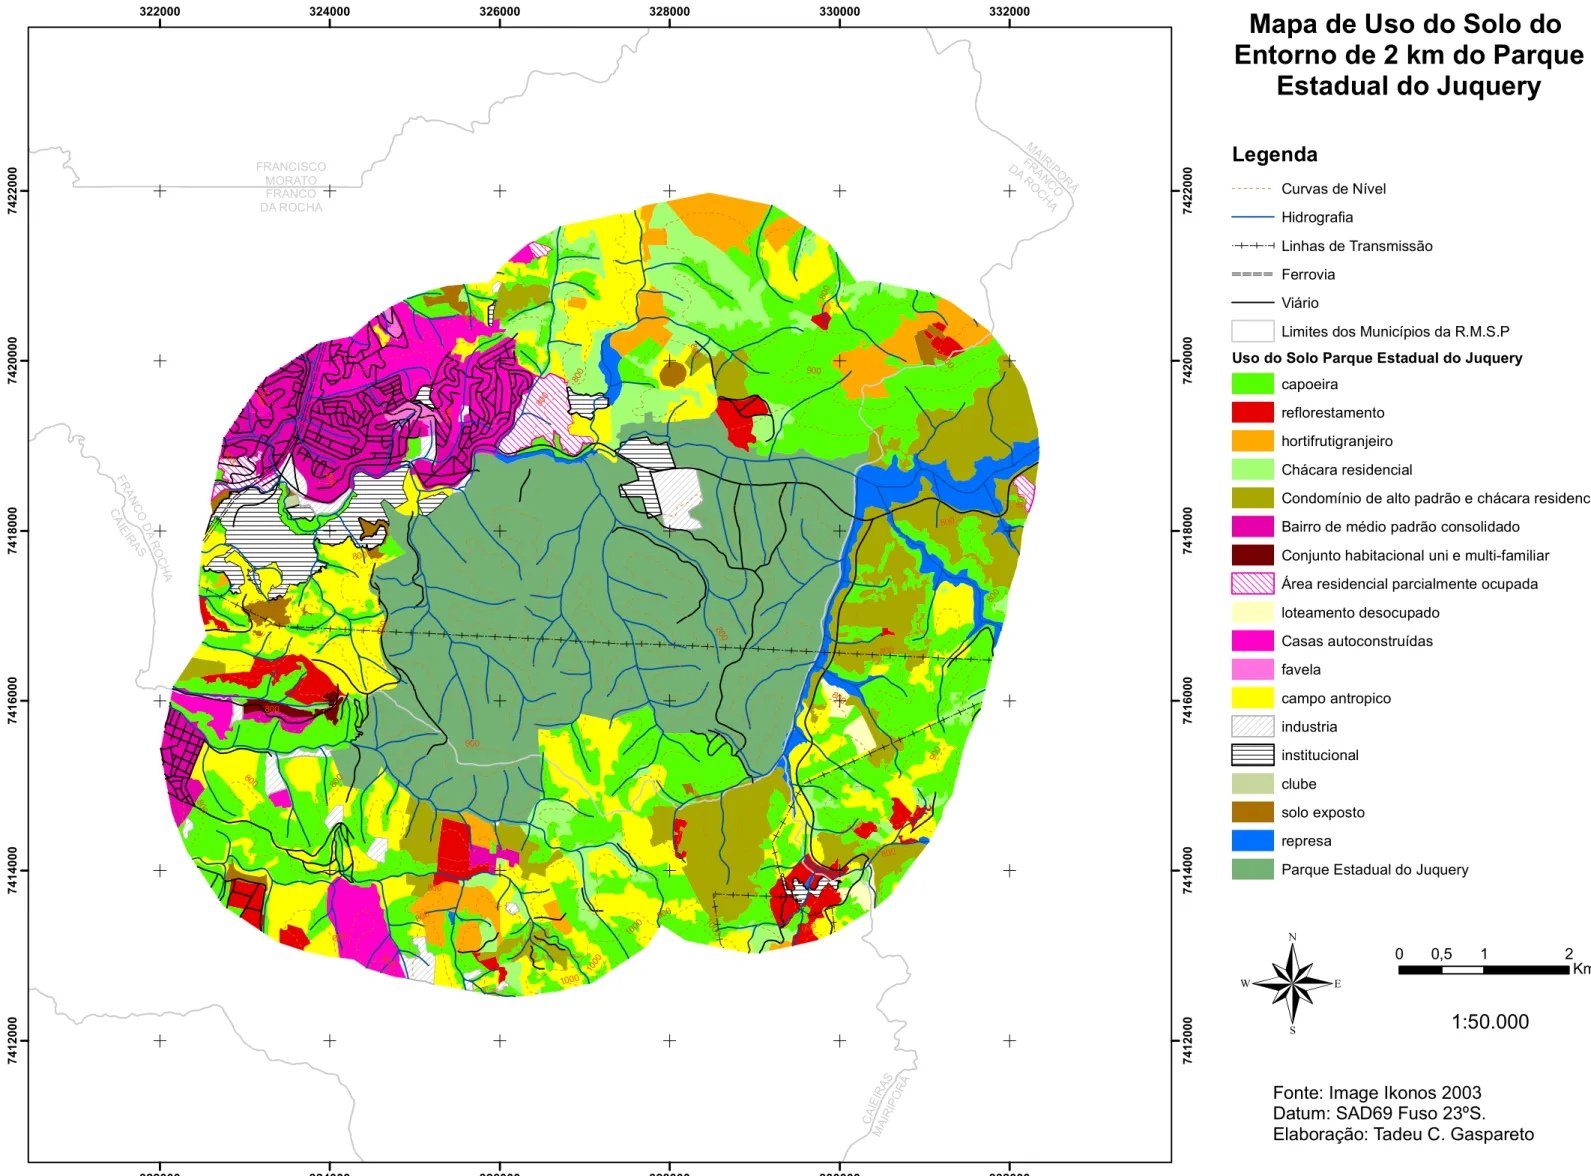 FIGURA 7 - Mapa de Uso do Solo do Entorno de 2 km do Parque Estadual do Juquery